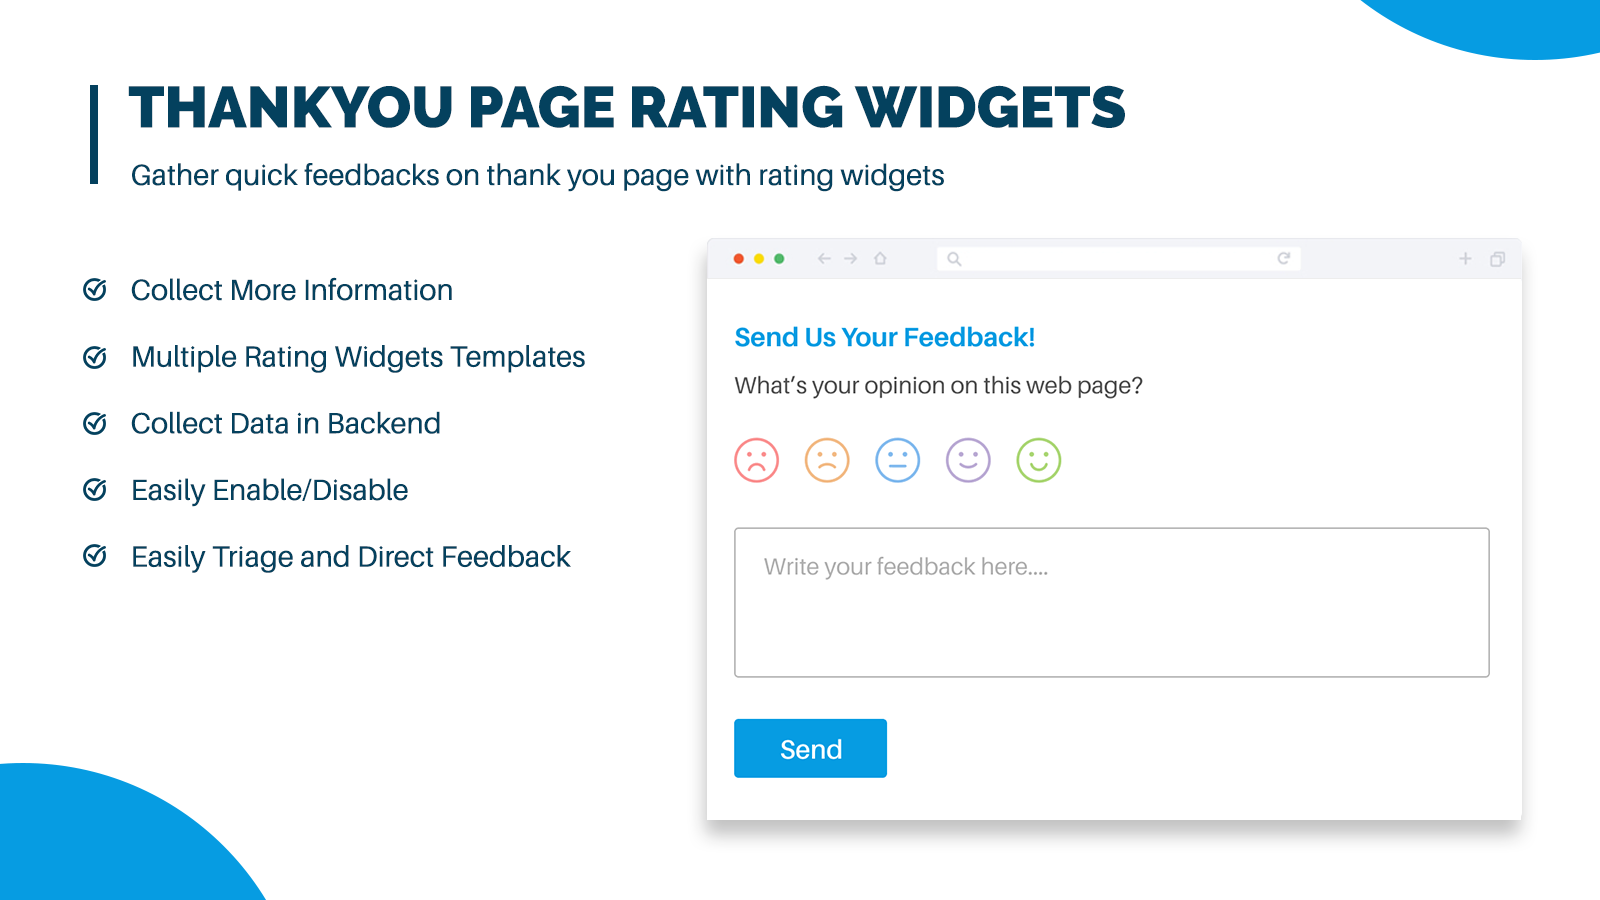 vis bedømmelse og feedback widgets på takkeside